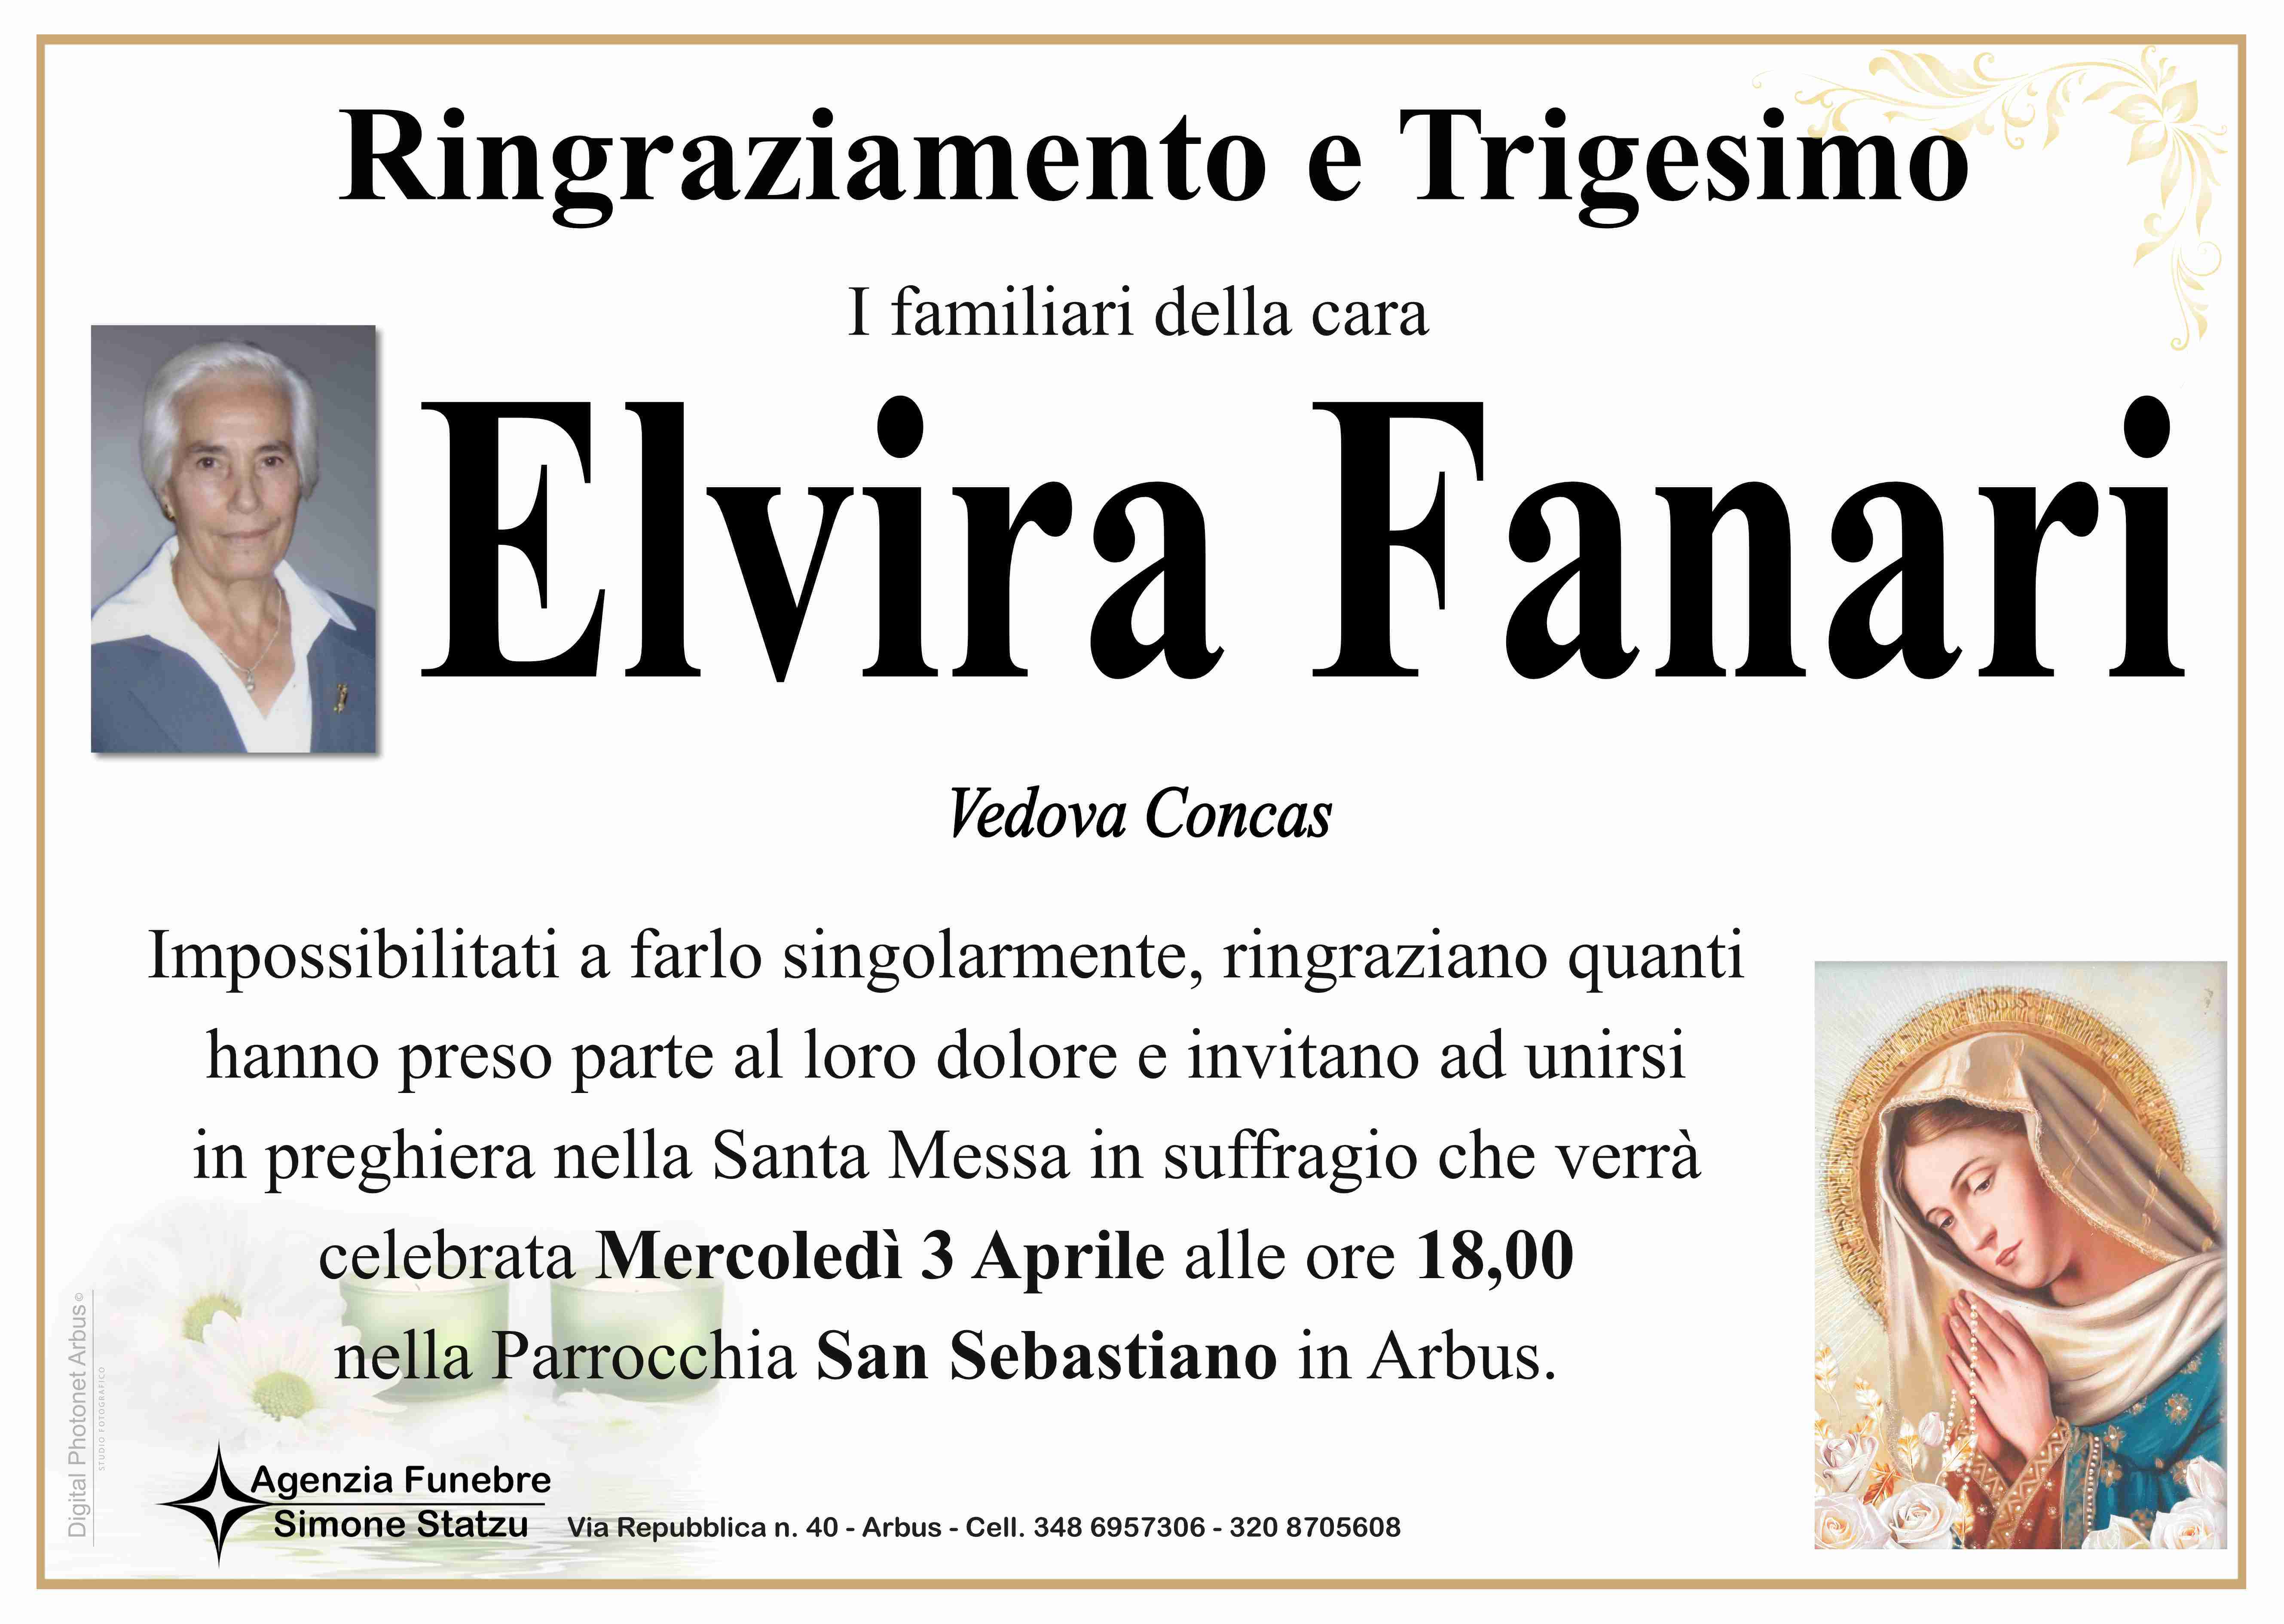 Elvira Fanari